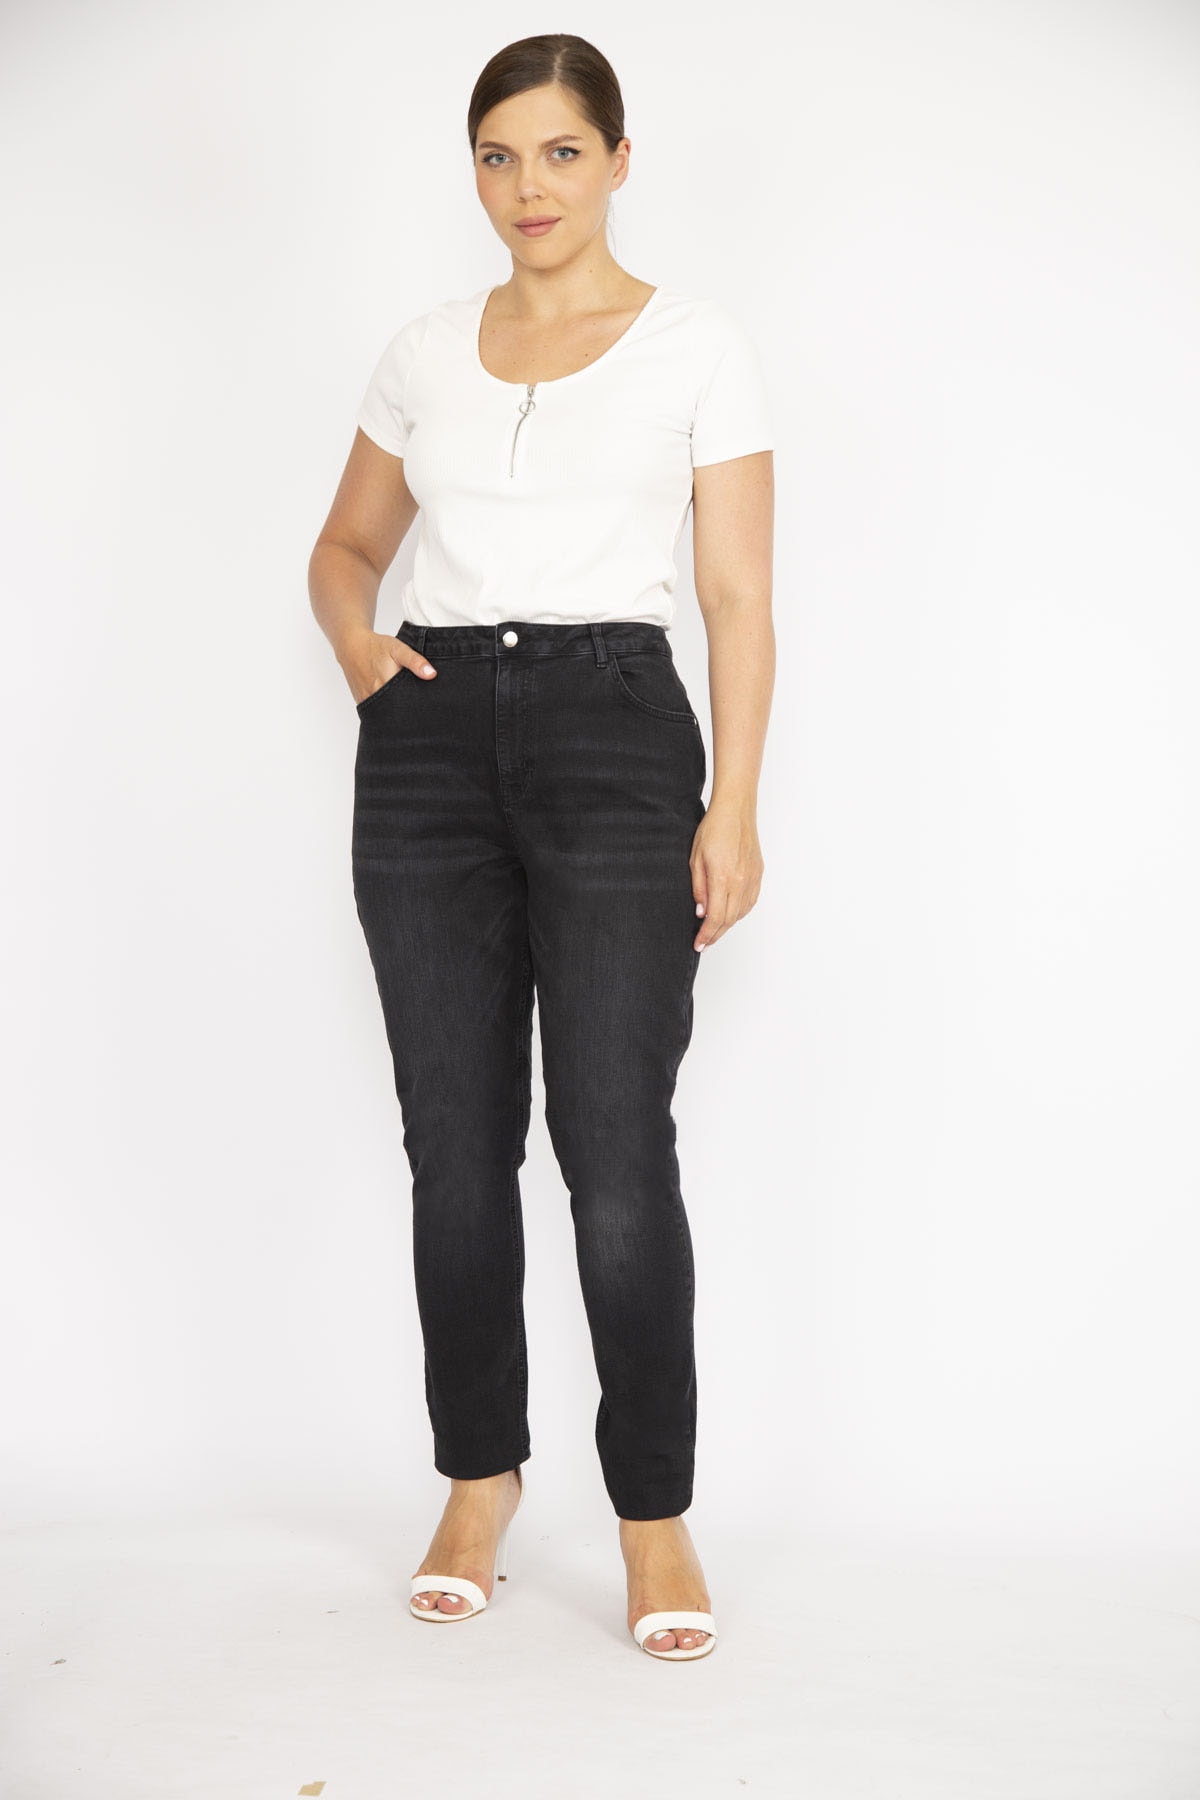 Levně Şans Women's Large Size Black High Waist Lycra 5 Pocket Jeans